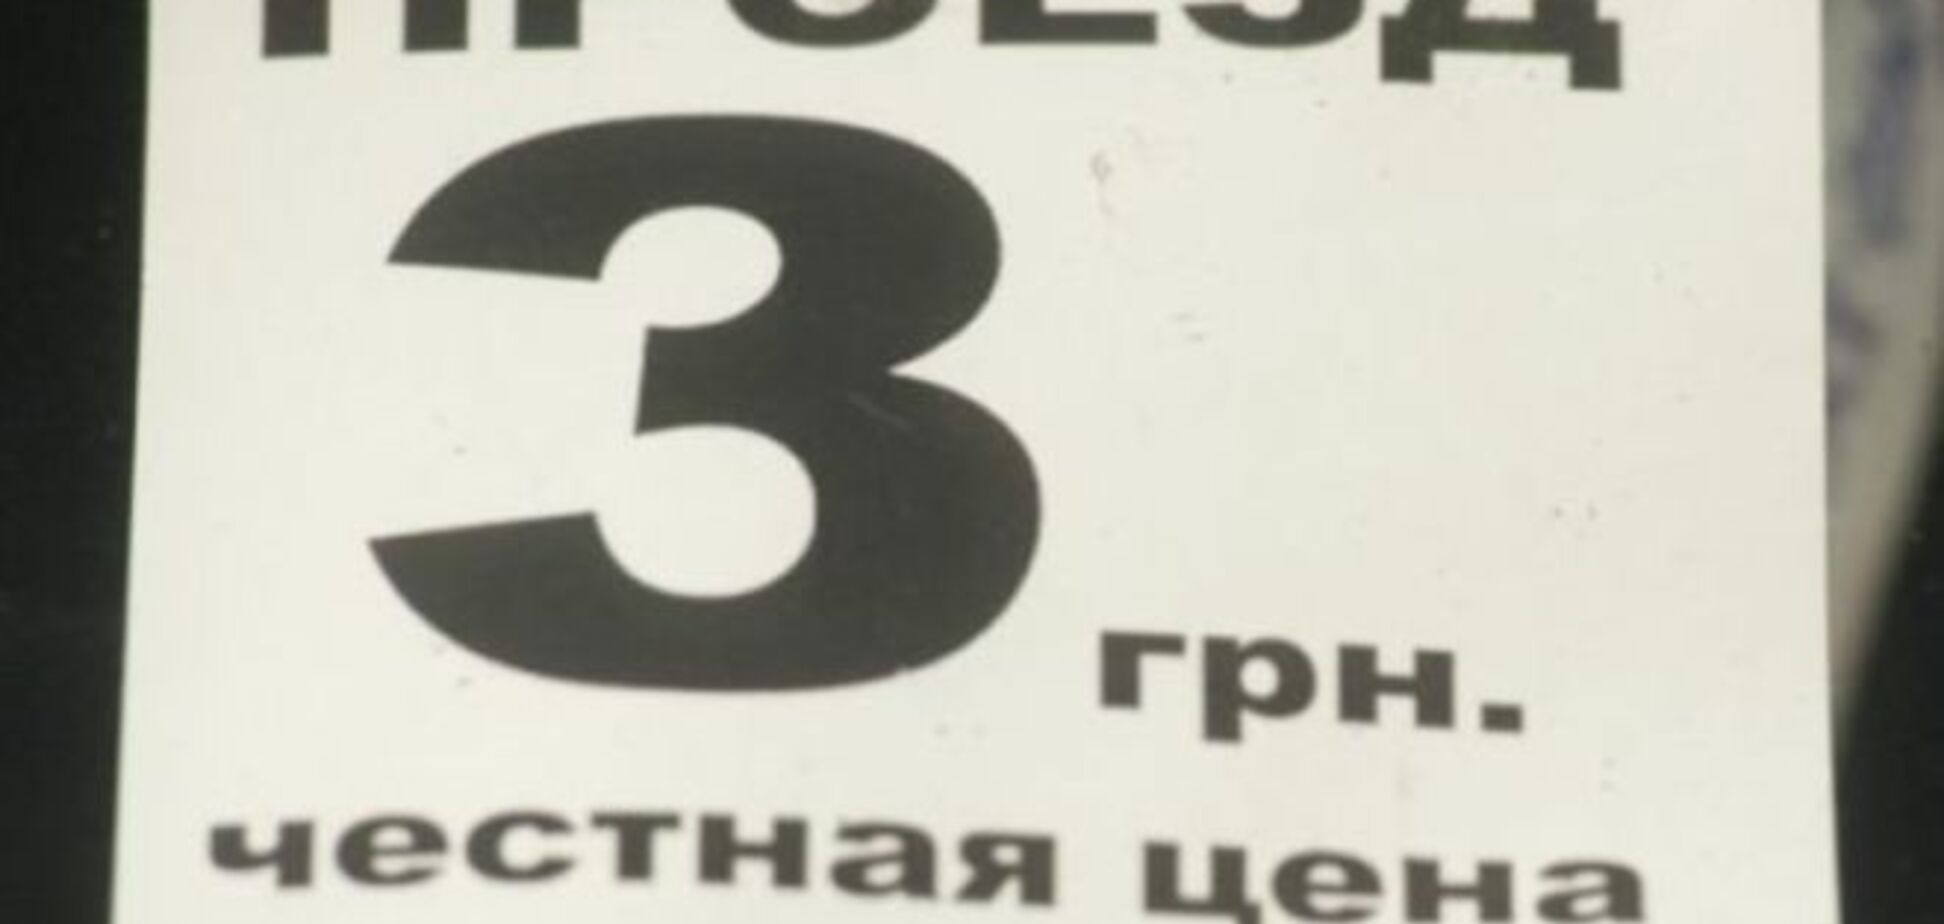 В Запорожье резко снизили цену проезда, чтобы не платить 'откаты' мэру и губернатору: фотофакты